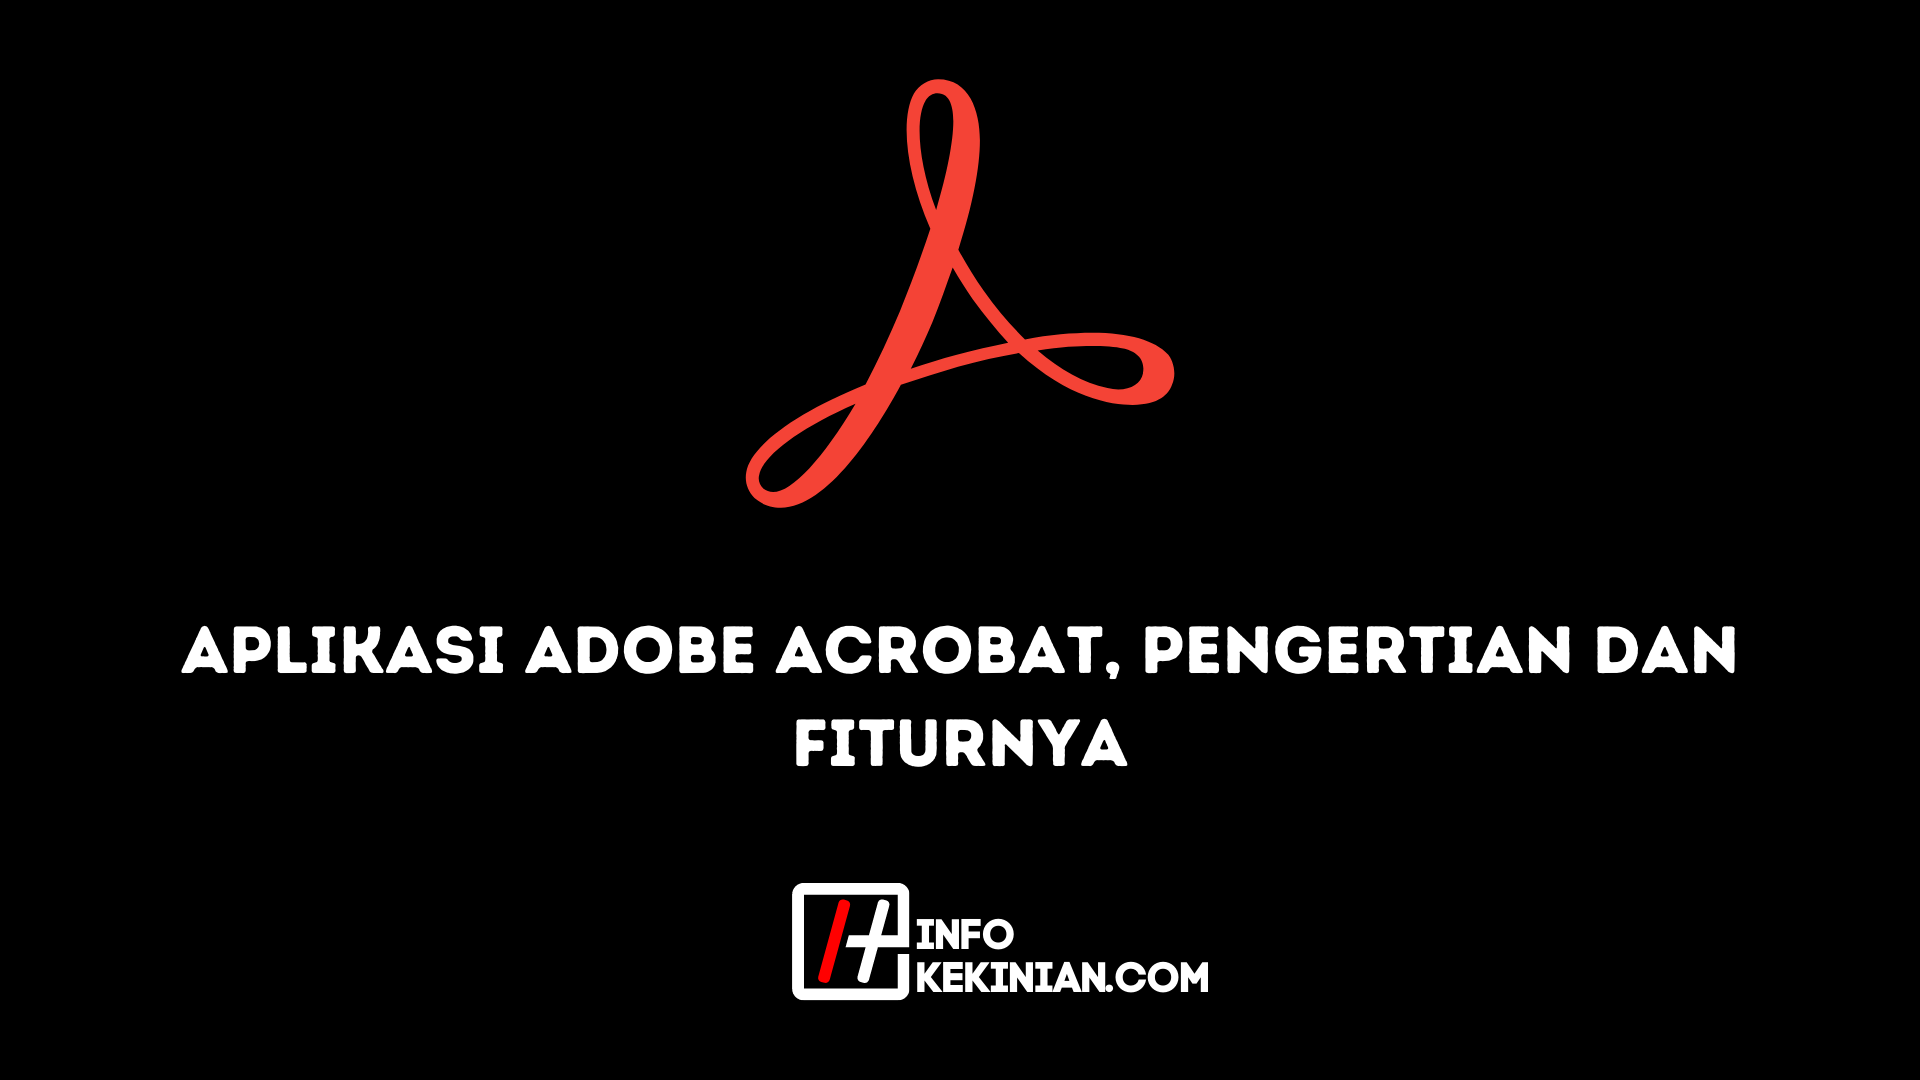 Aplikasi Adobe Acrobat Pengertian dan Fiturnya